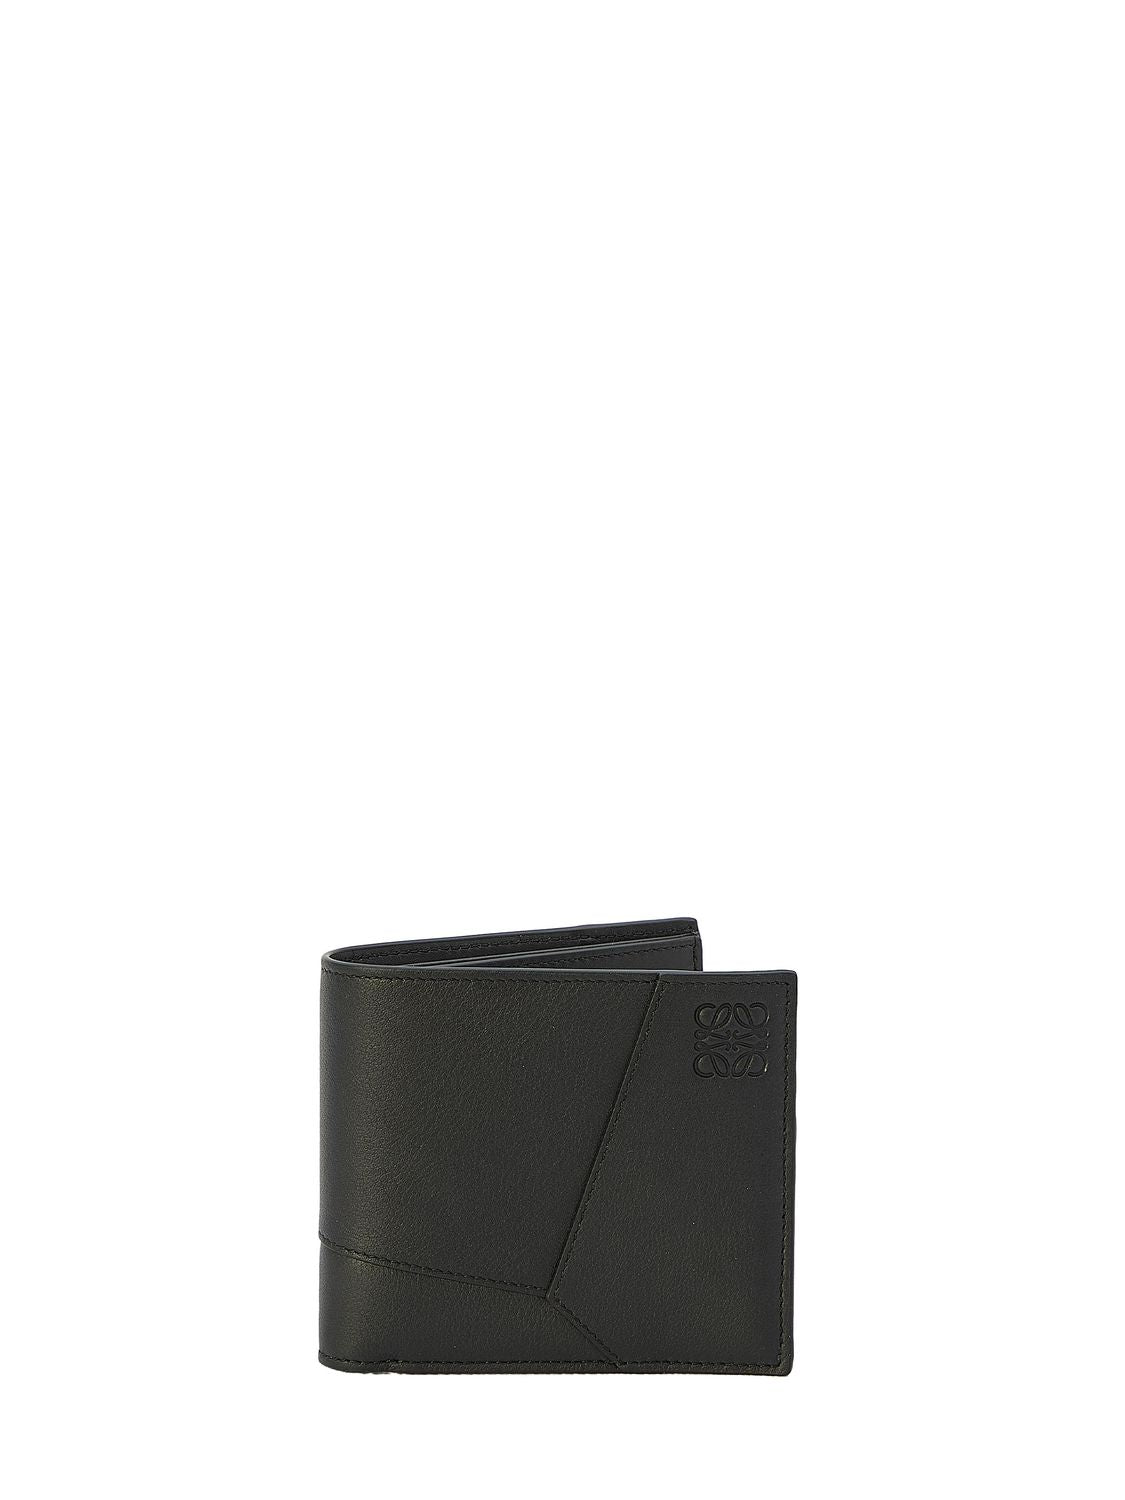  حافظة جلدية رجالية للمحفظة مع حلية سوداء لفصل SS24